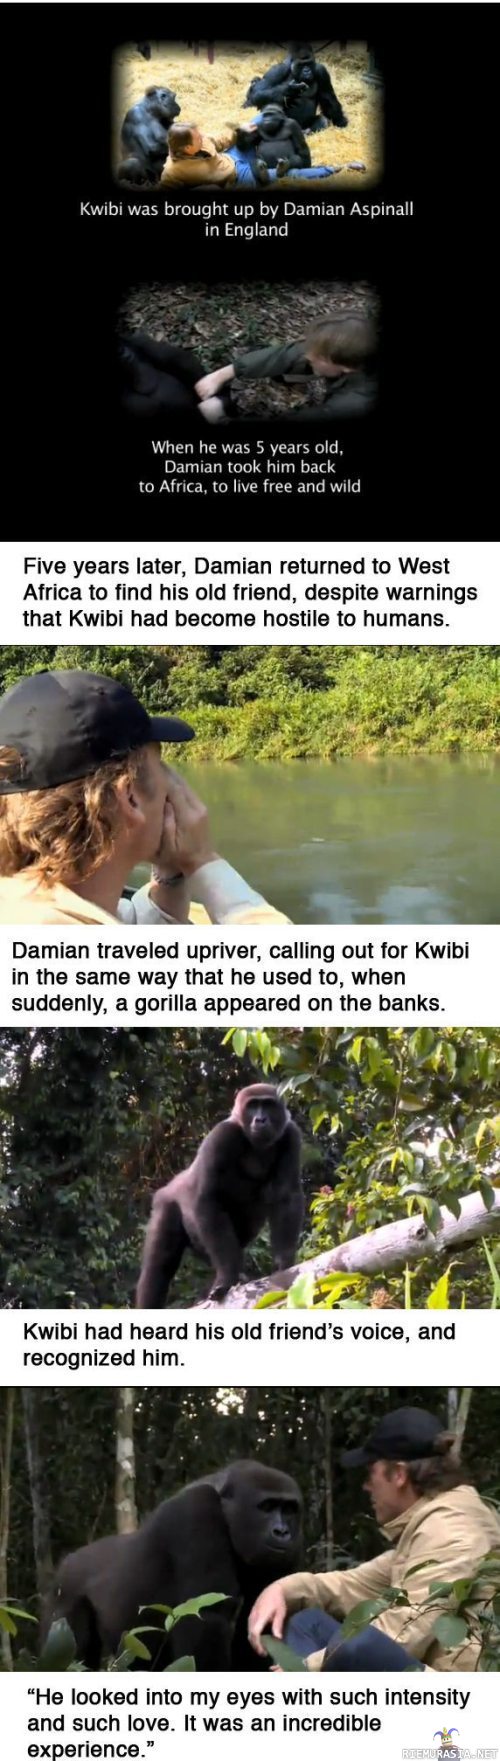 Gorillakaveri - Mies palauttaa gorillan takaisin viidakkoon ja tulee tervehtimään tätä viiden vuoden kuluttua.